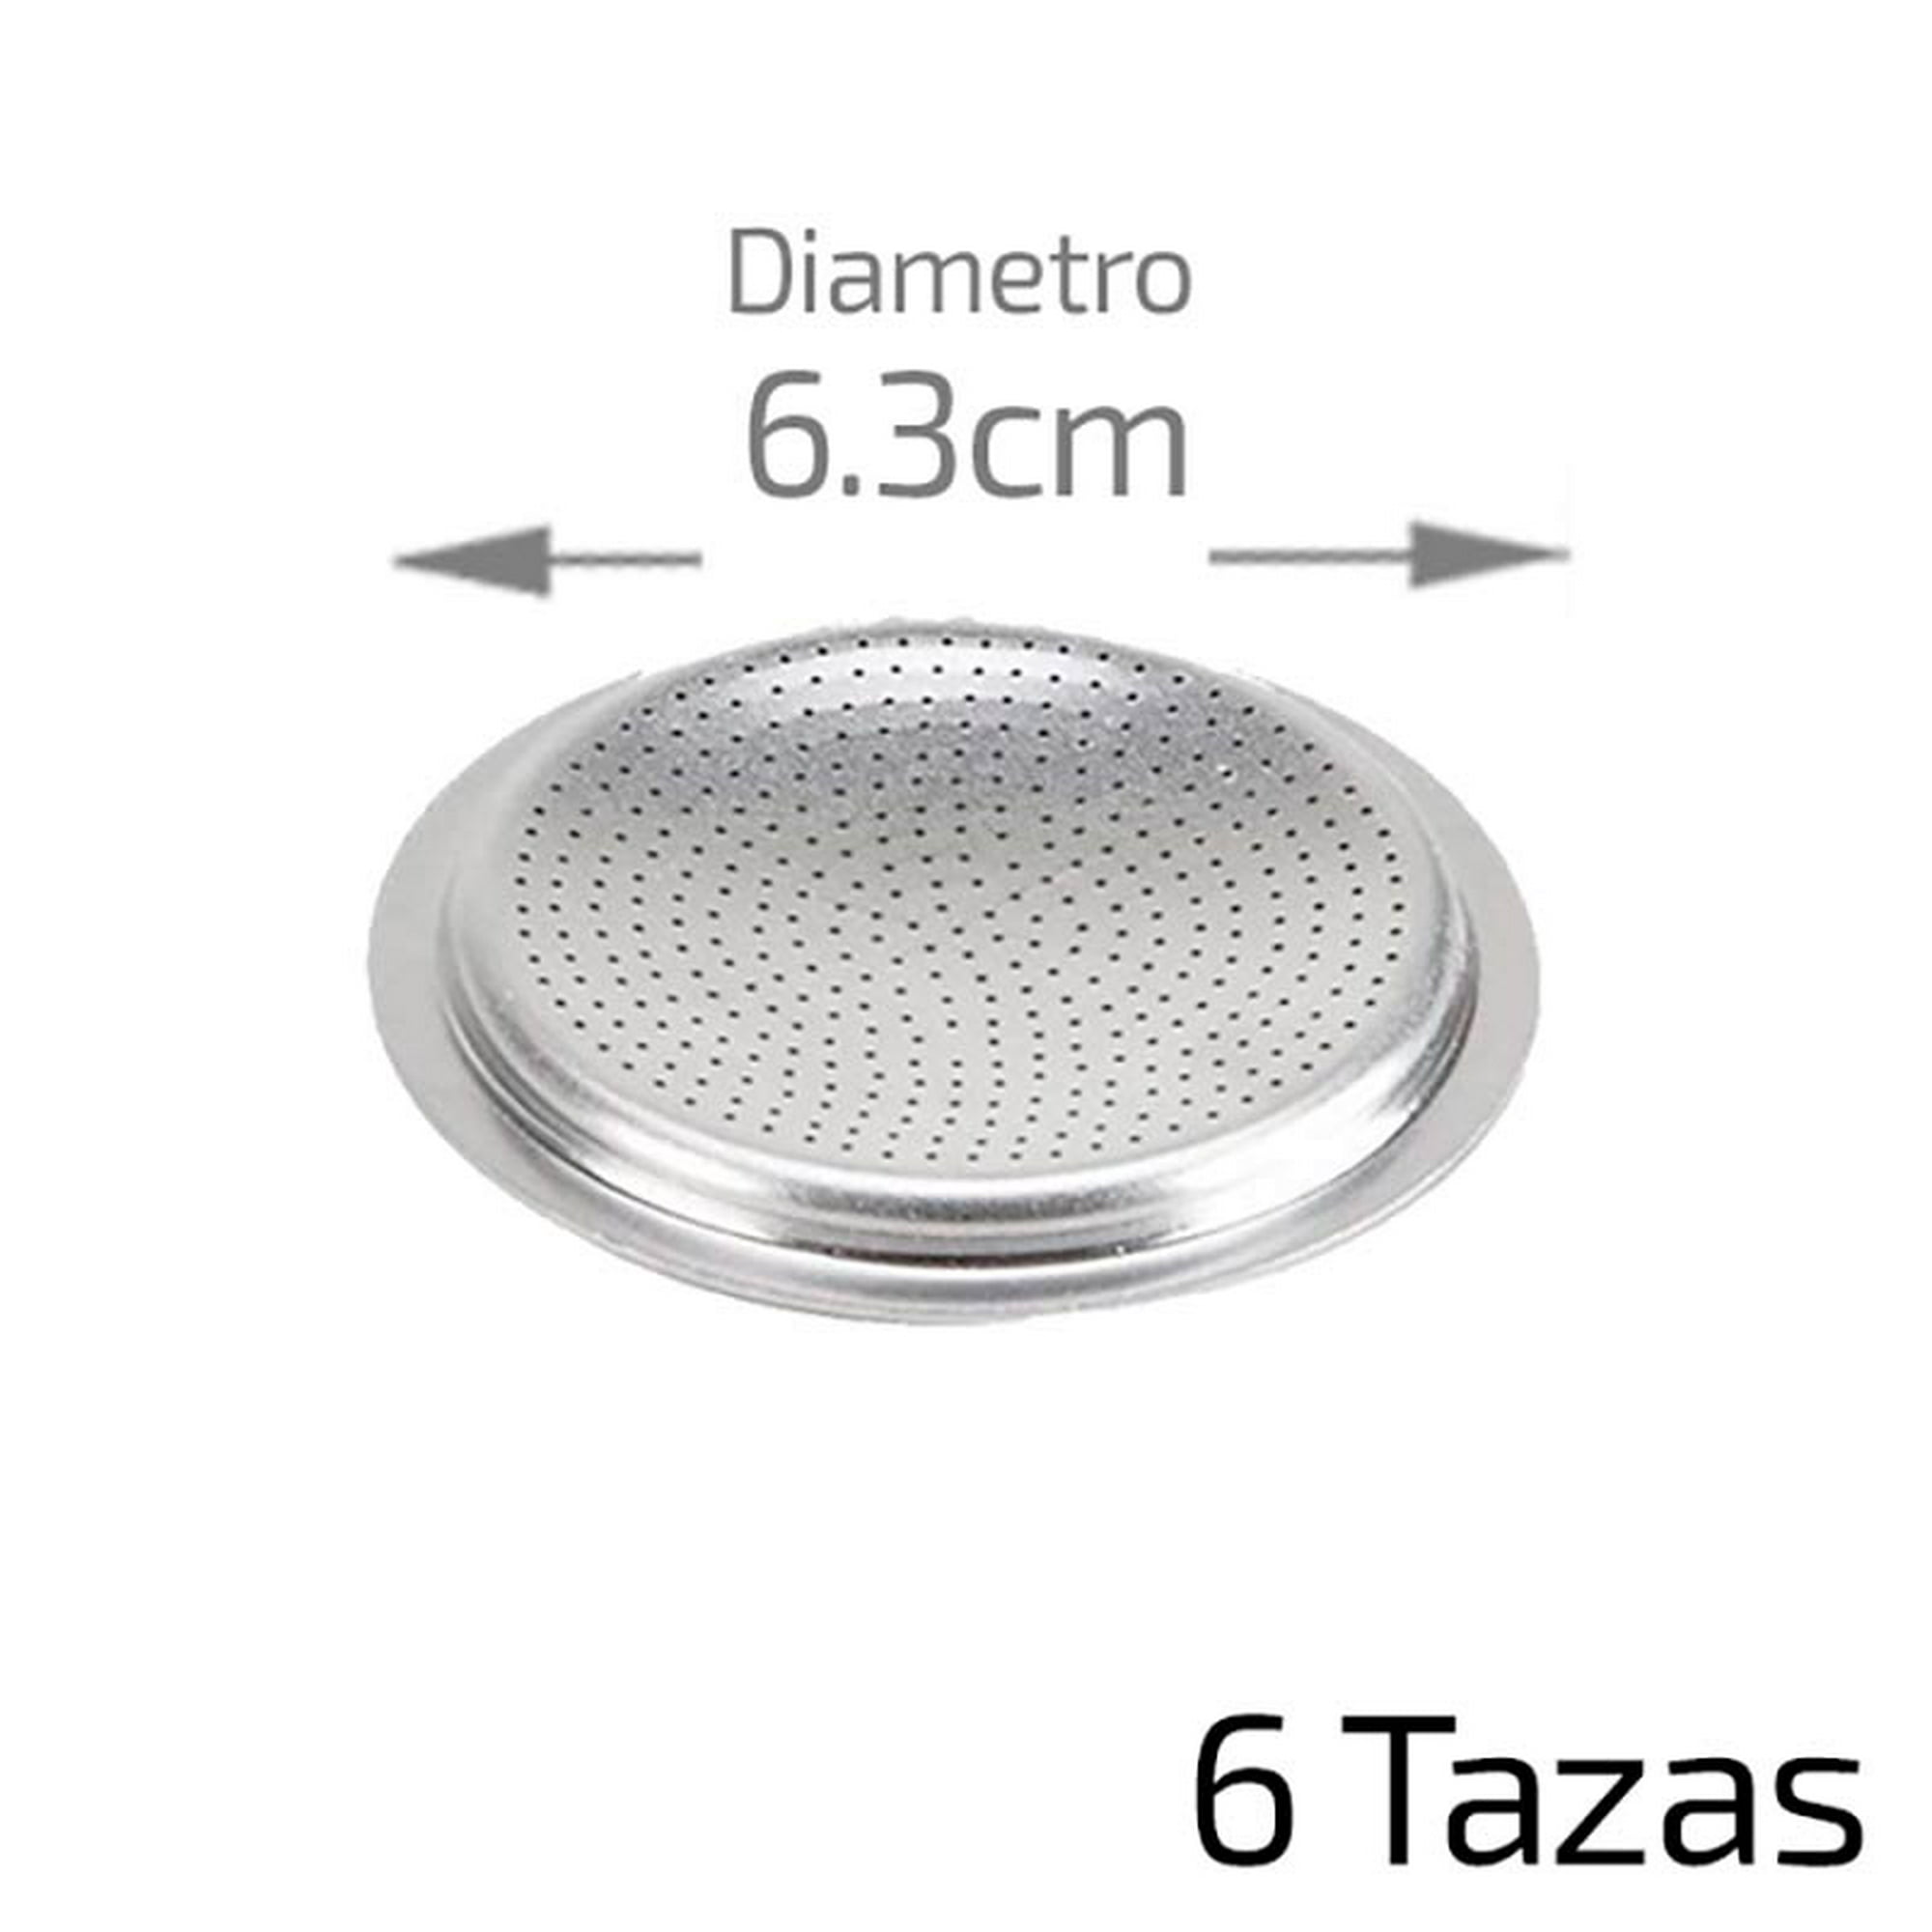 Filtro Aluminio Cafetera Italiana Bialetti Y Turmix 3 Tazas